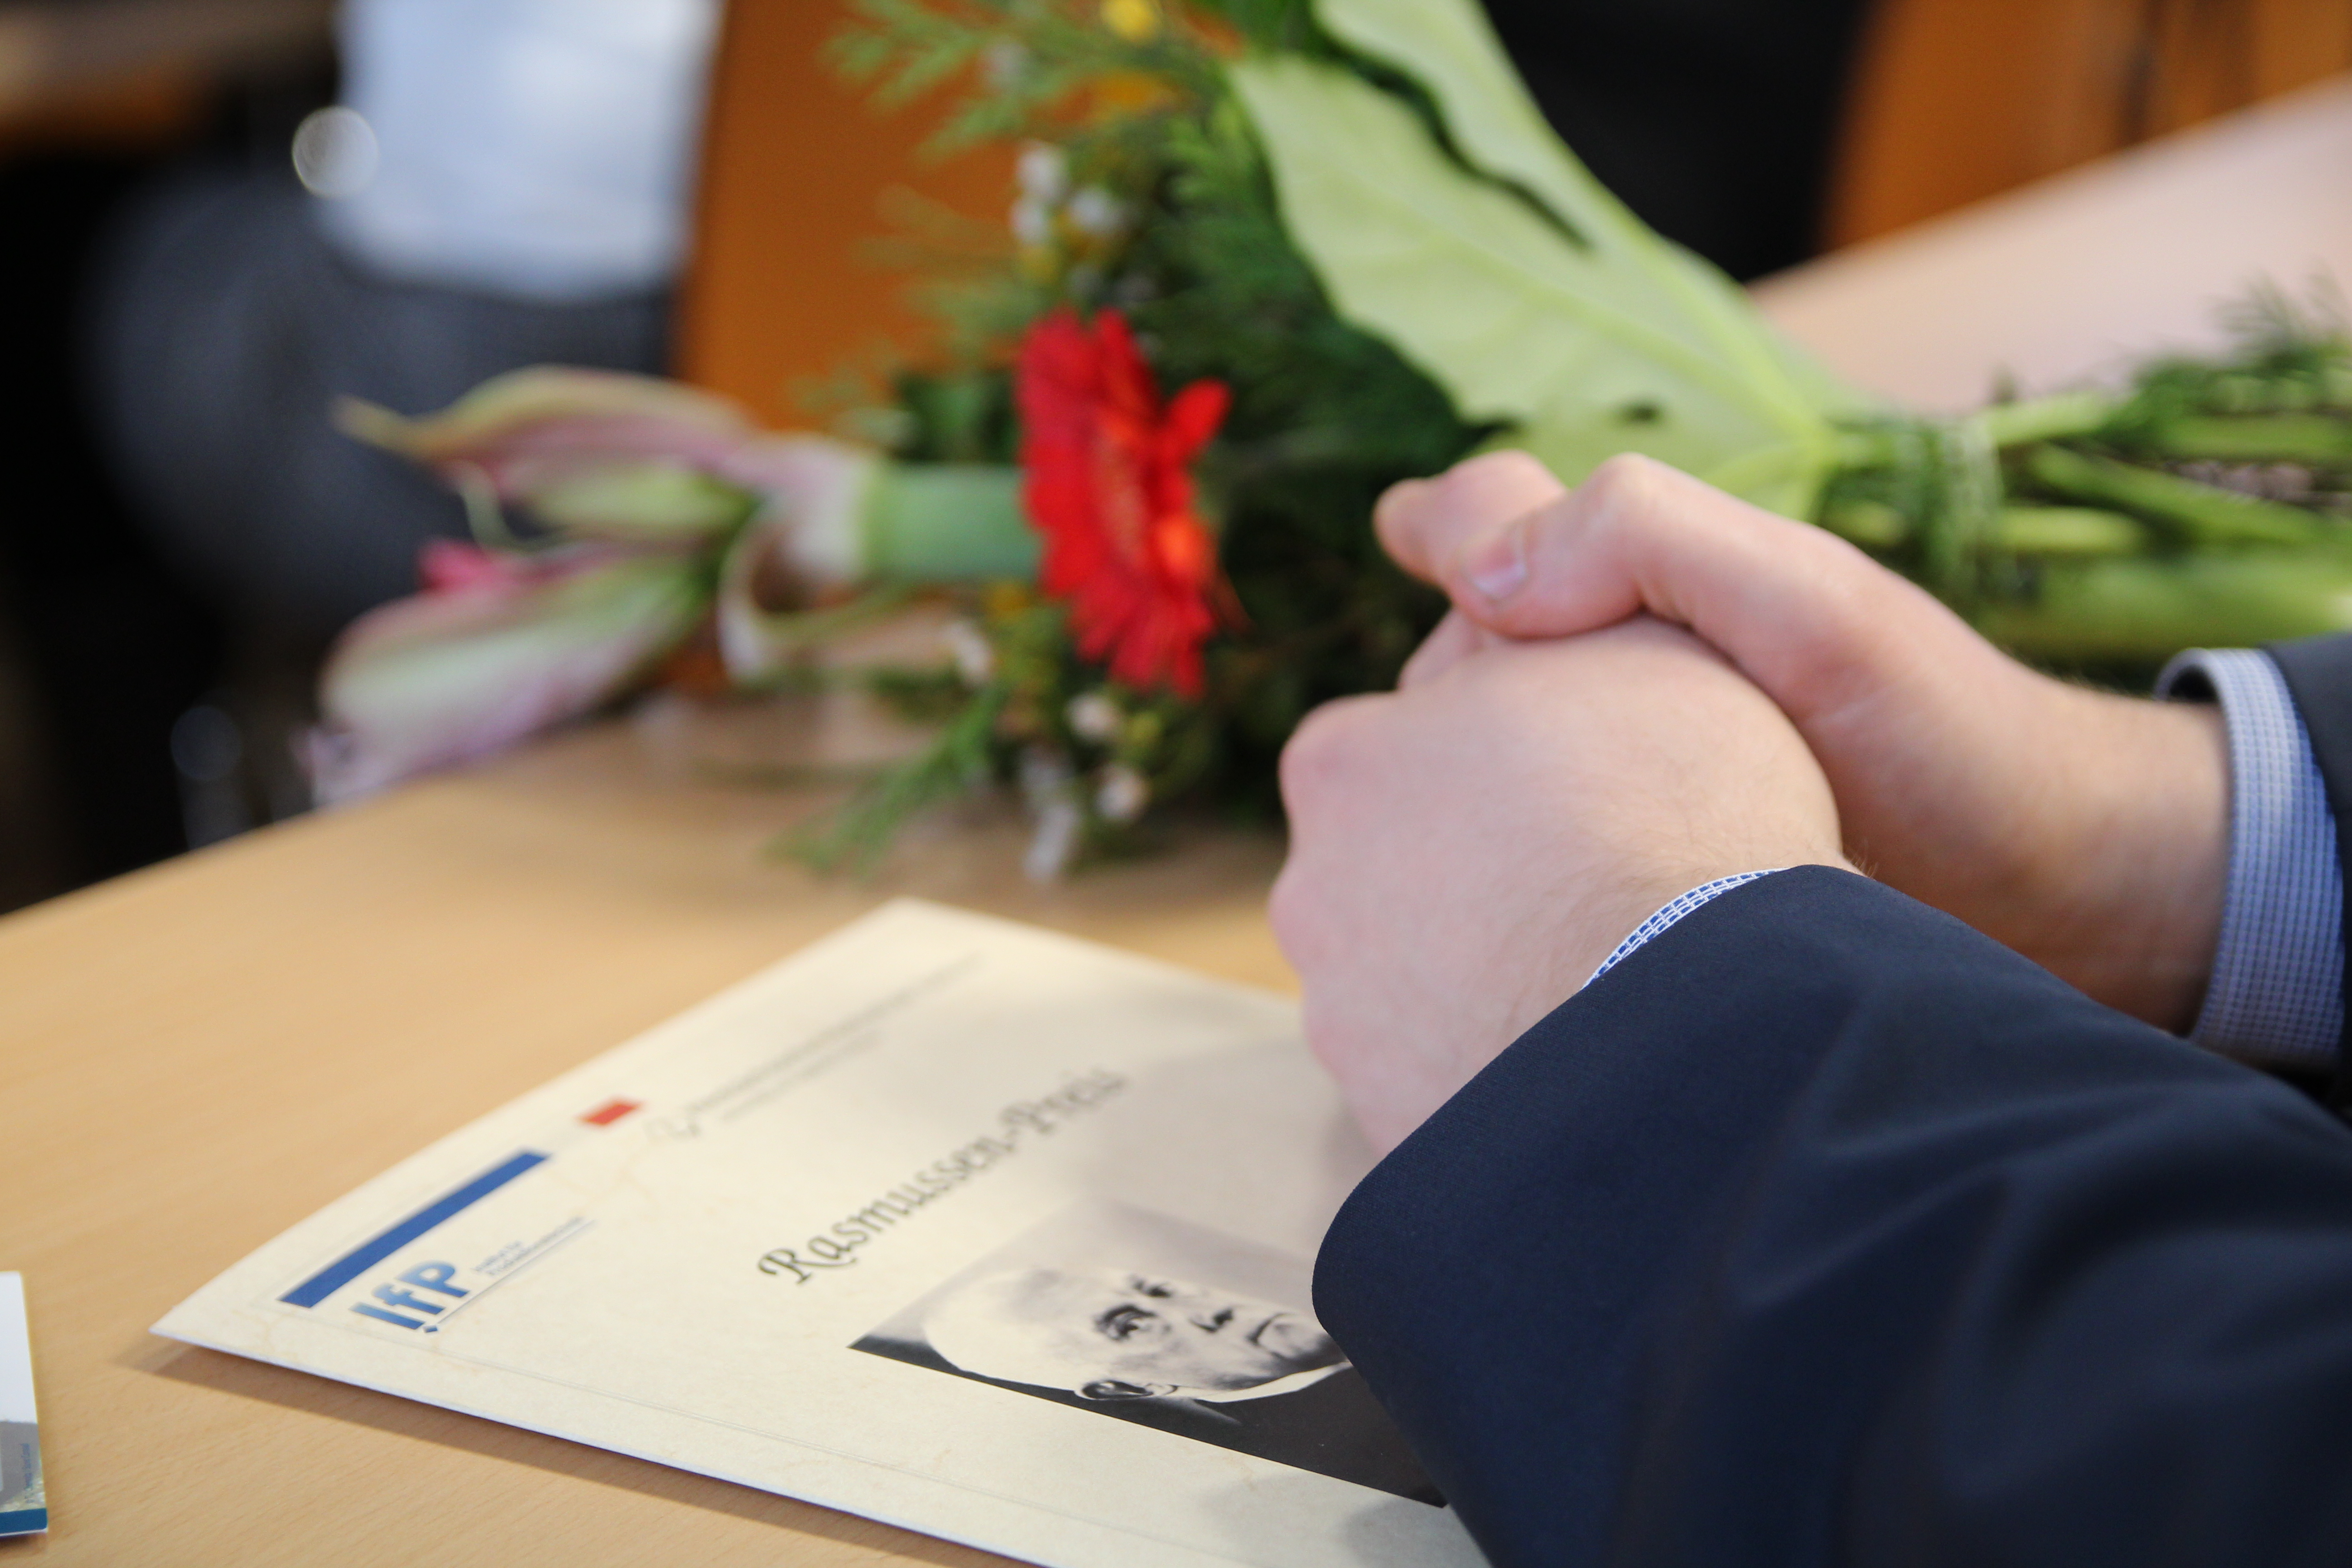 Foto: Zwei Hände liegen zusammengefaltet über einer Informationsbroschüre auf einem Tisch.